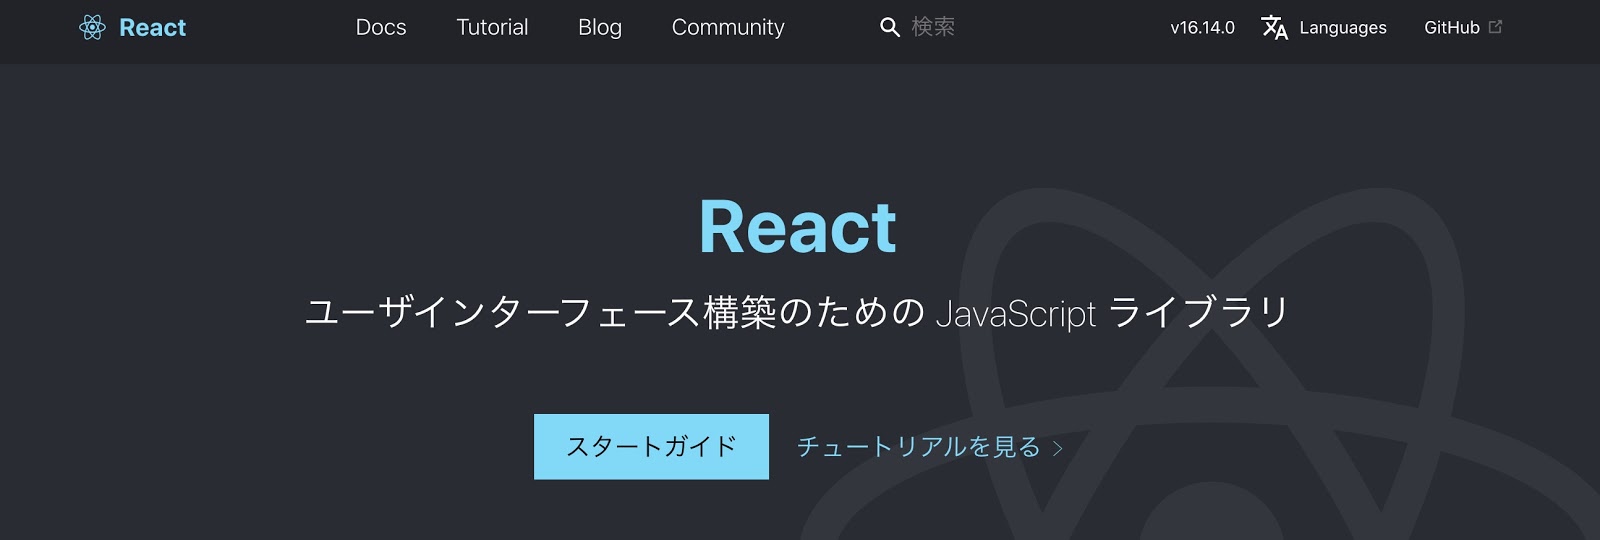 React公式サイト